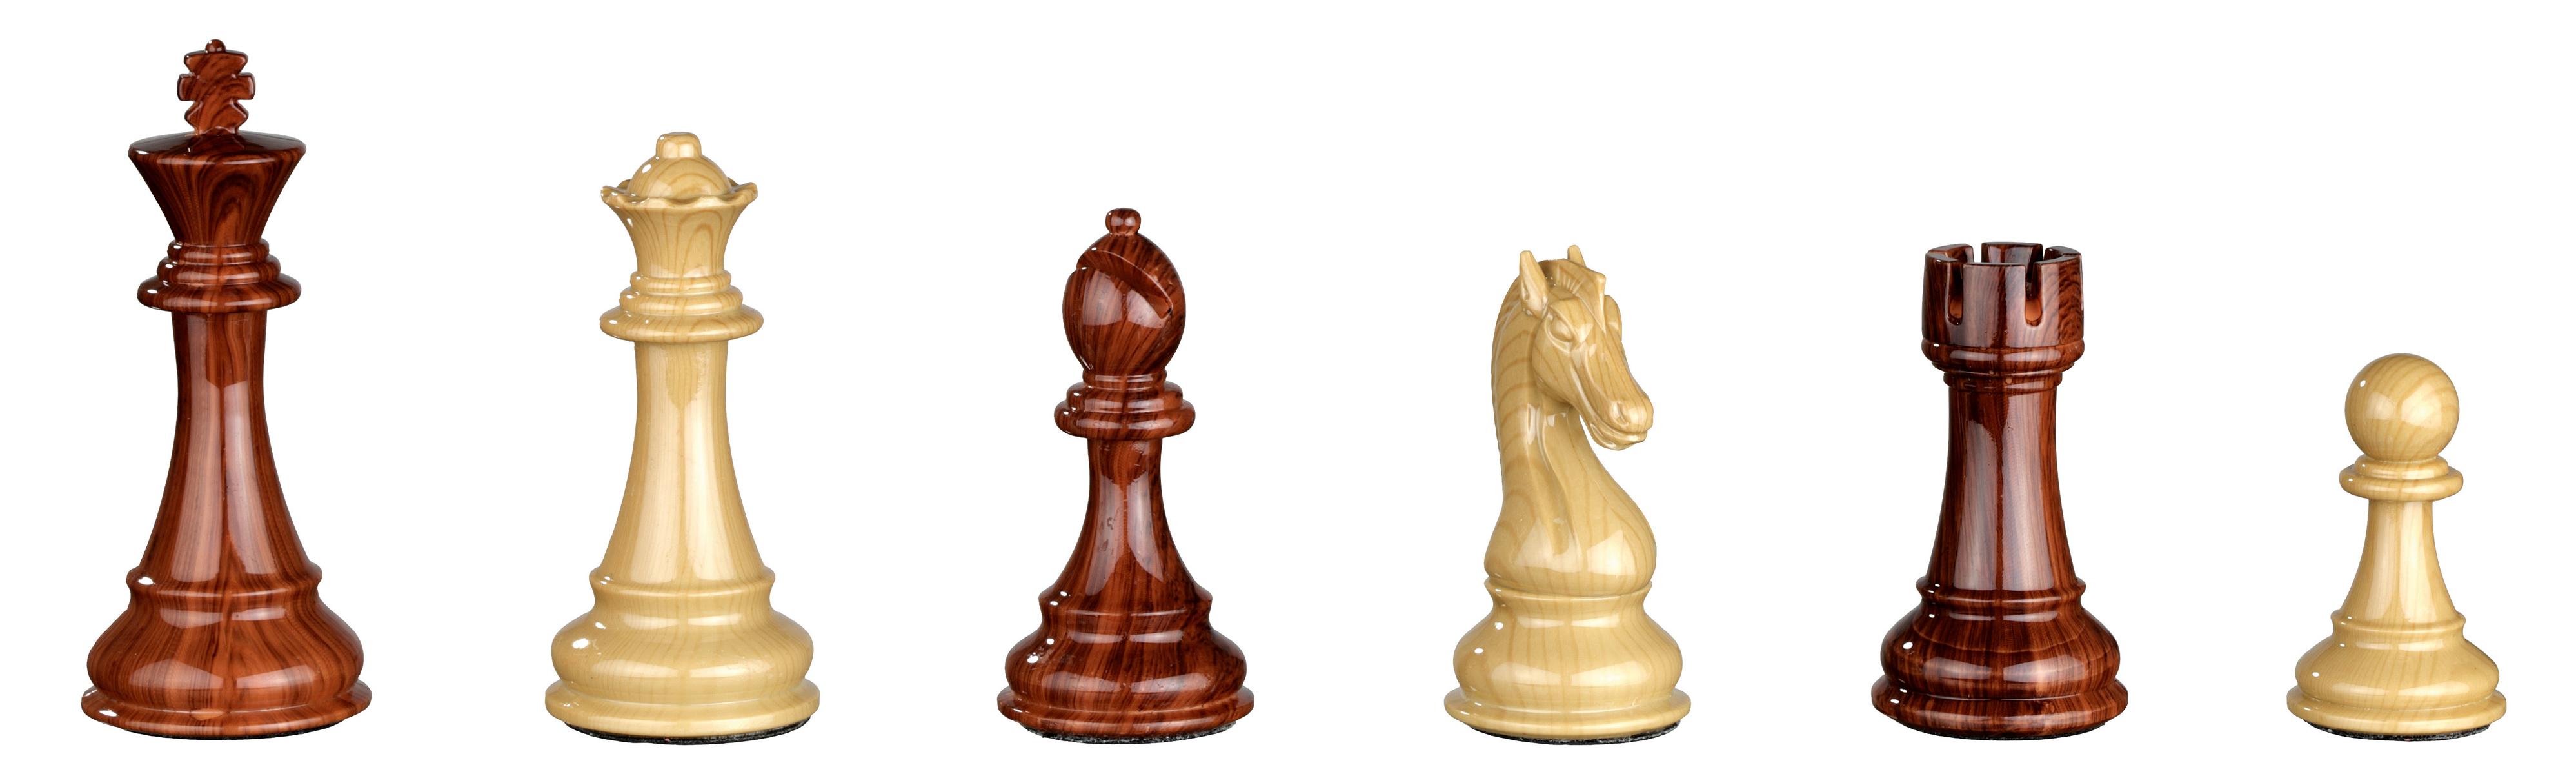 Schachfiguren Aurelius, Königshöhe 110 mm, Kunststoff, braun beige, gewichtet, im Polybeutel